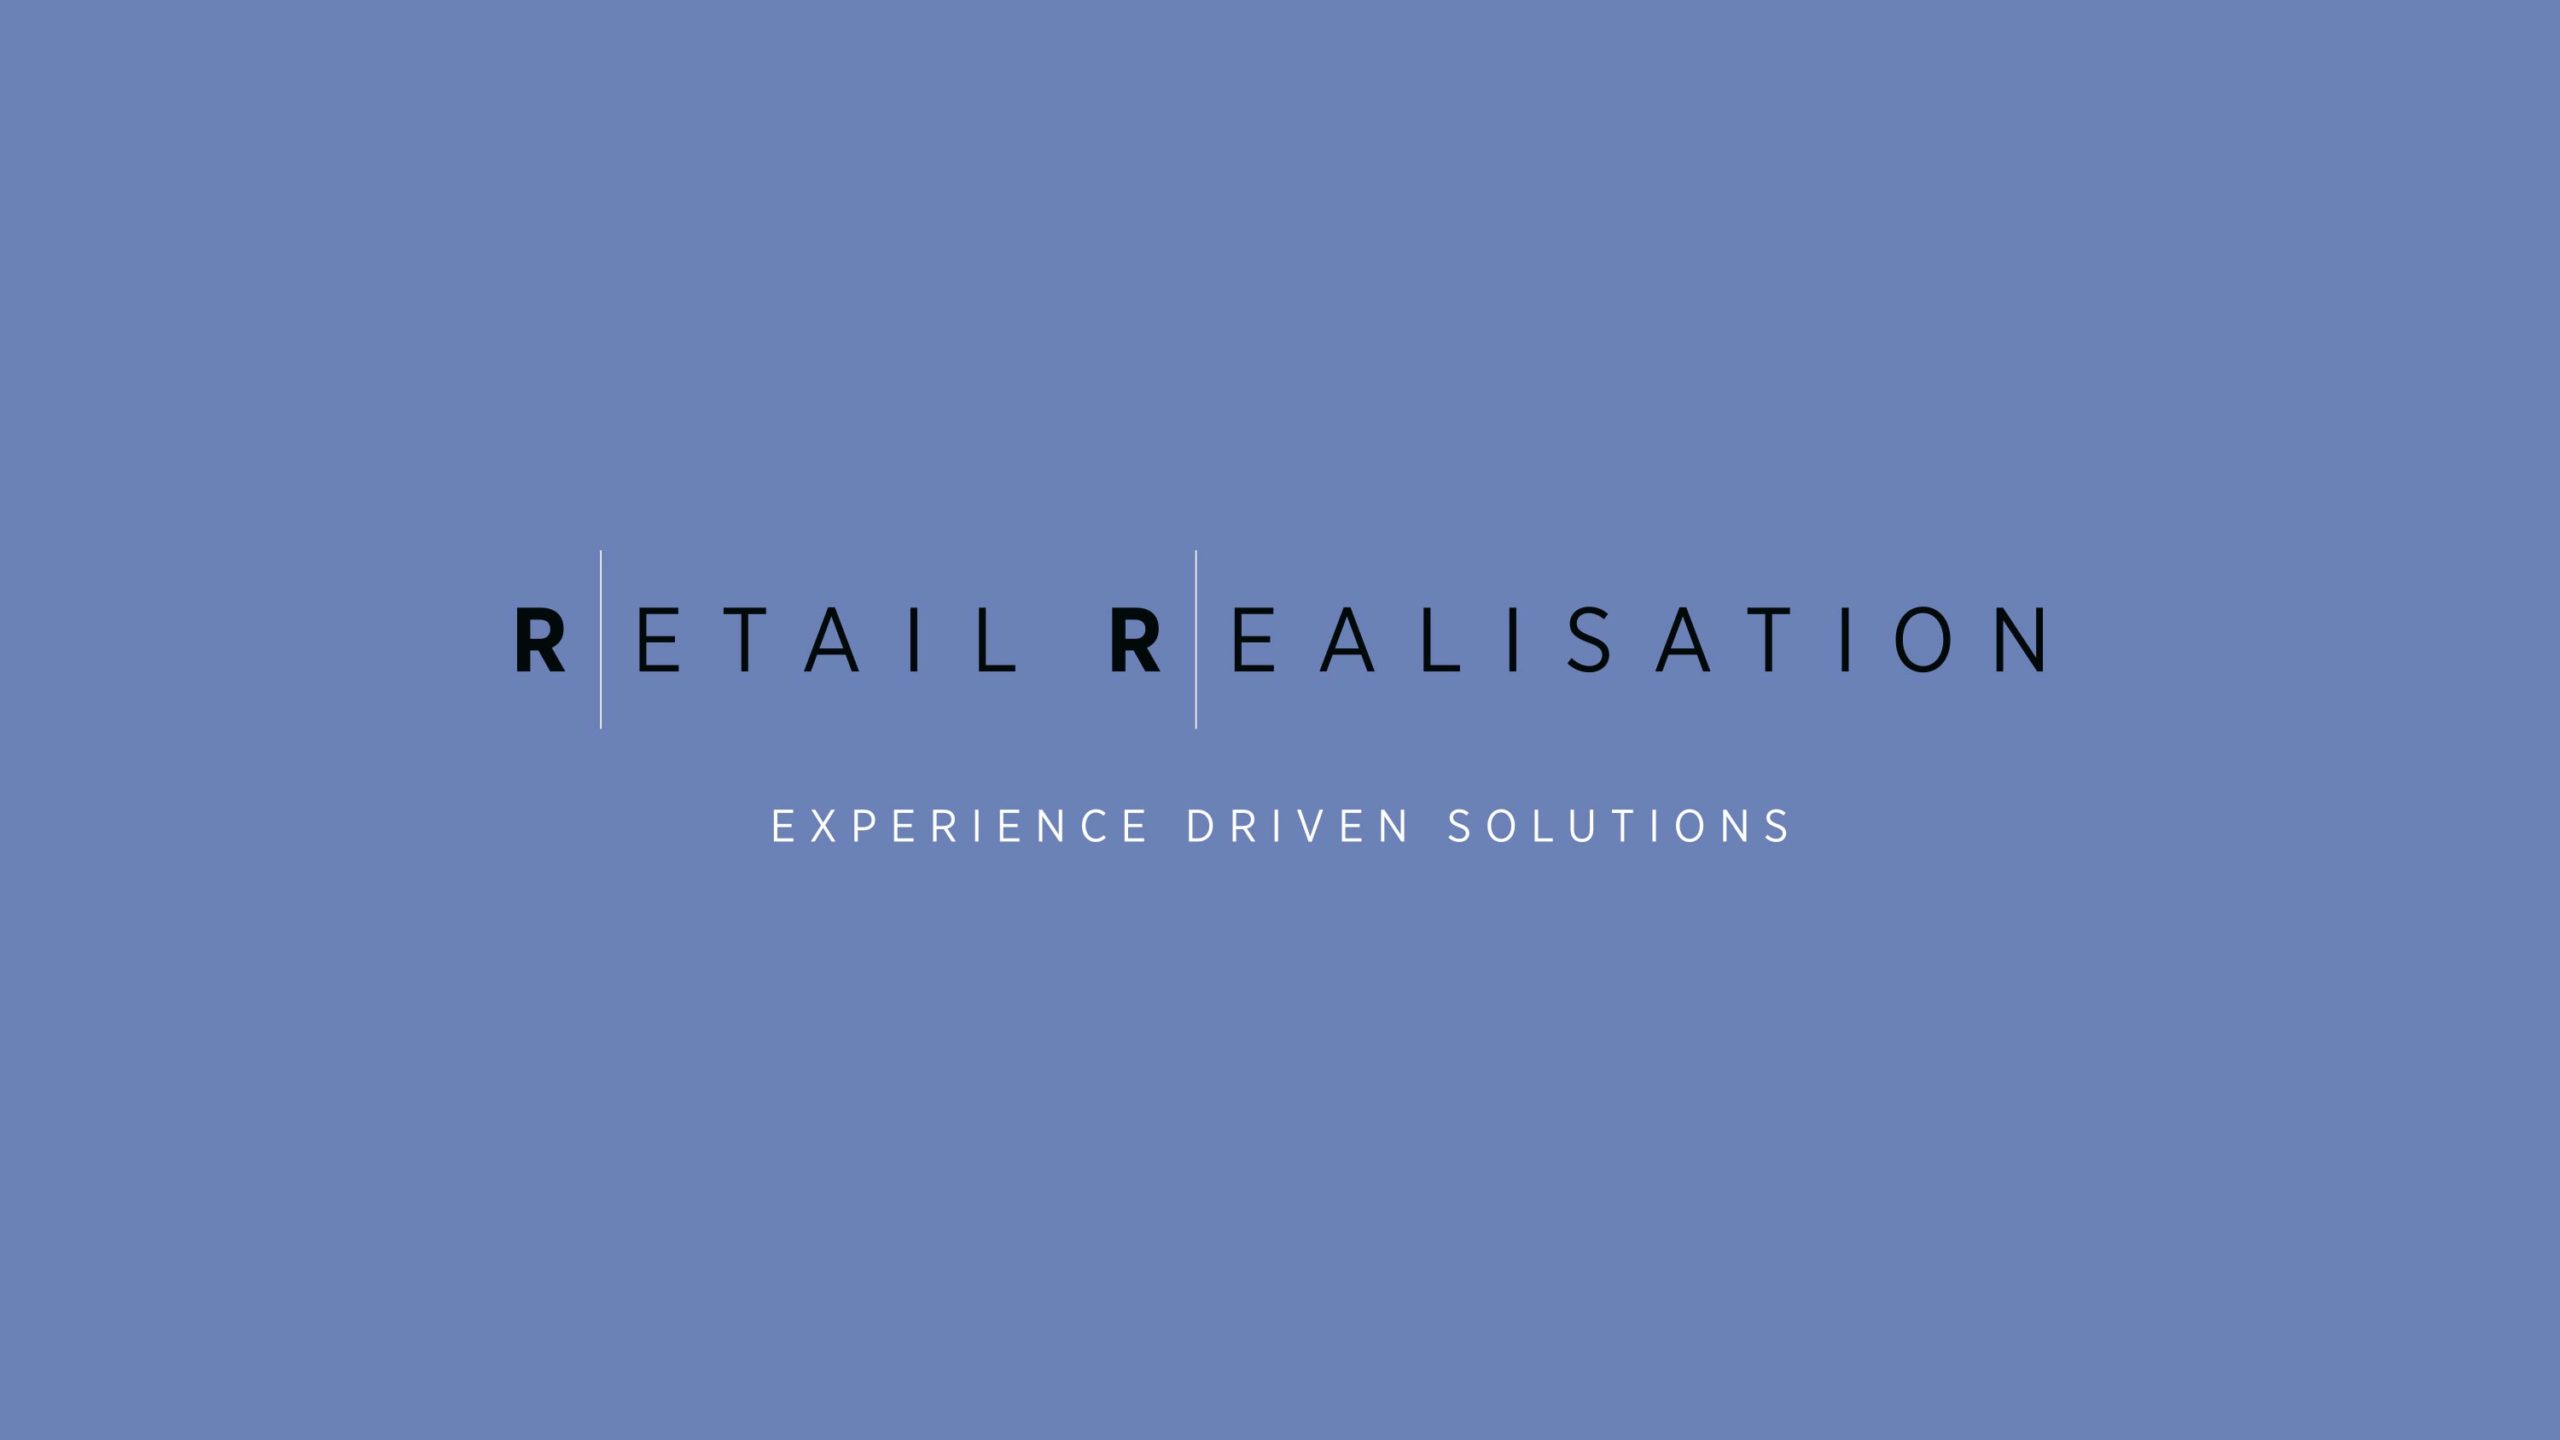 Retail Realisation brand identity and strapline